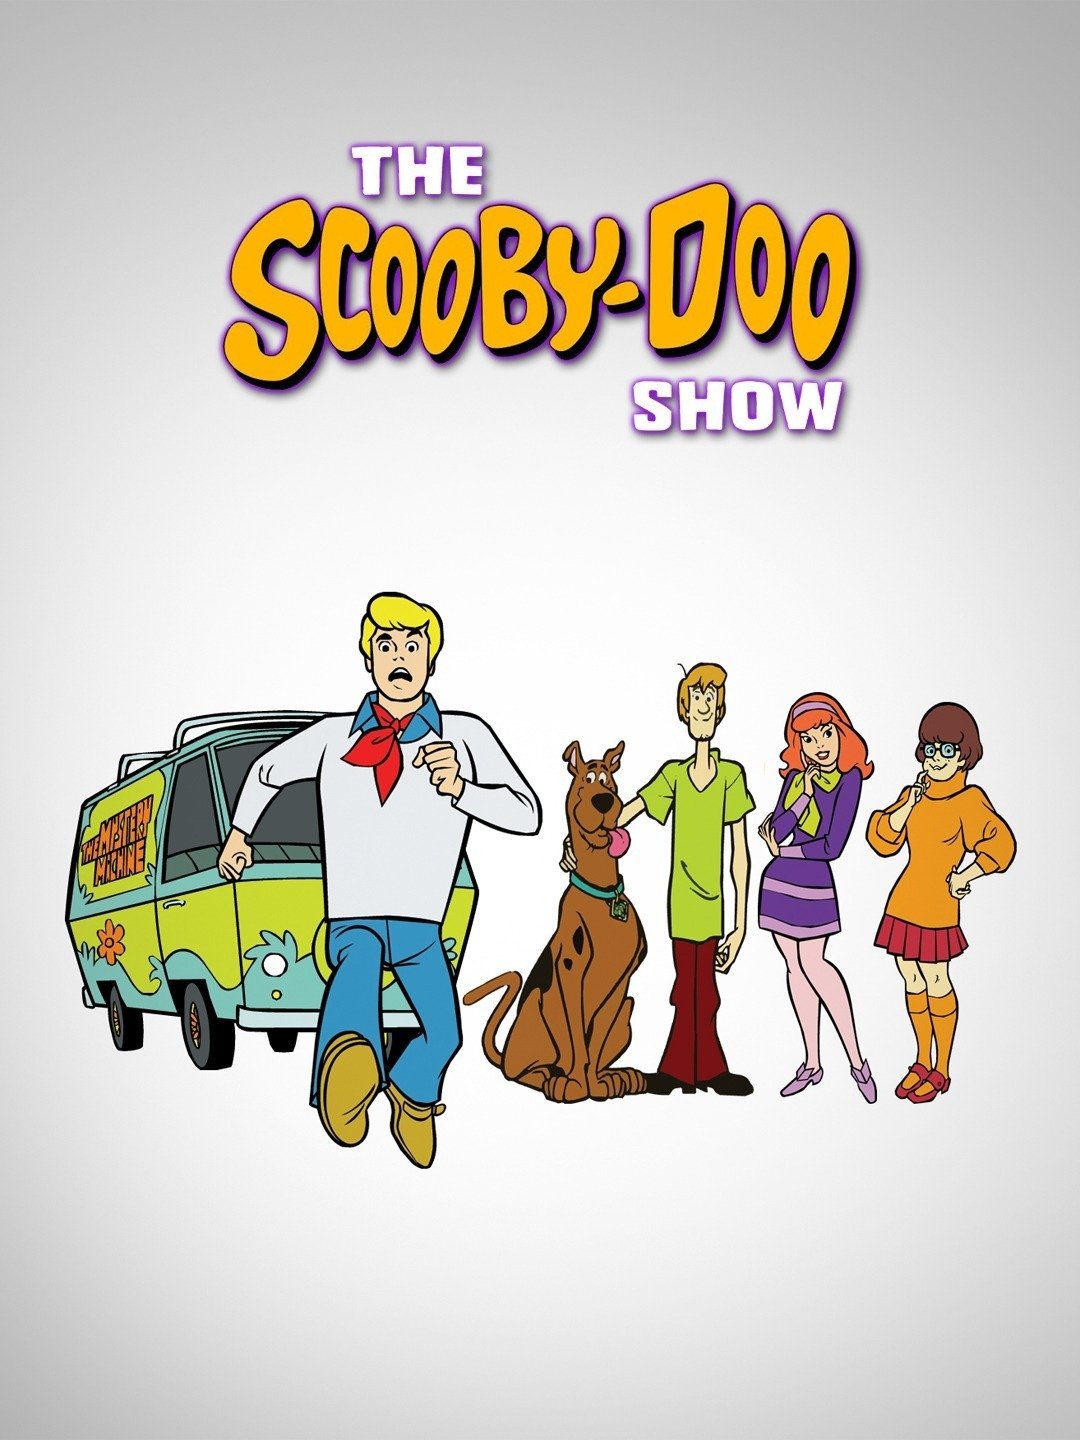 The scooby doo show. Scooby Doo show. The Scooby Doo show show. The Scooby-Doo show Series 4.